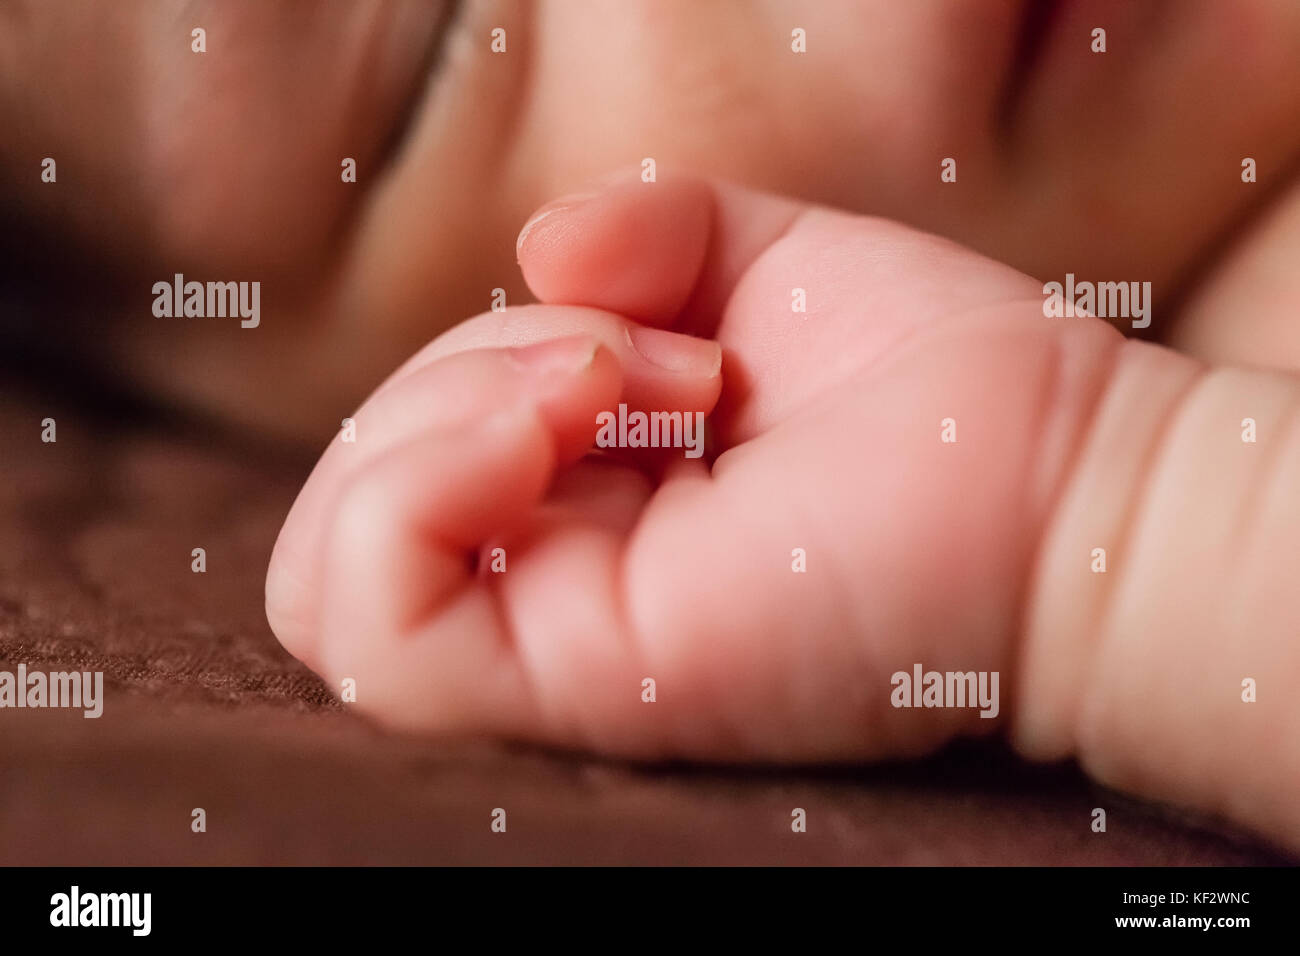 Nahaufnahme eines kleinen und zarten Hand eines niedlichen kleinen Zwei Wochen alte Neugeborene Mädchen, friedlich schlafend im Bett/Neugeborenen hand baby girl Nahaufnahme Stockfoto